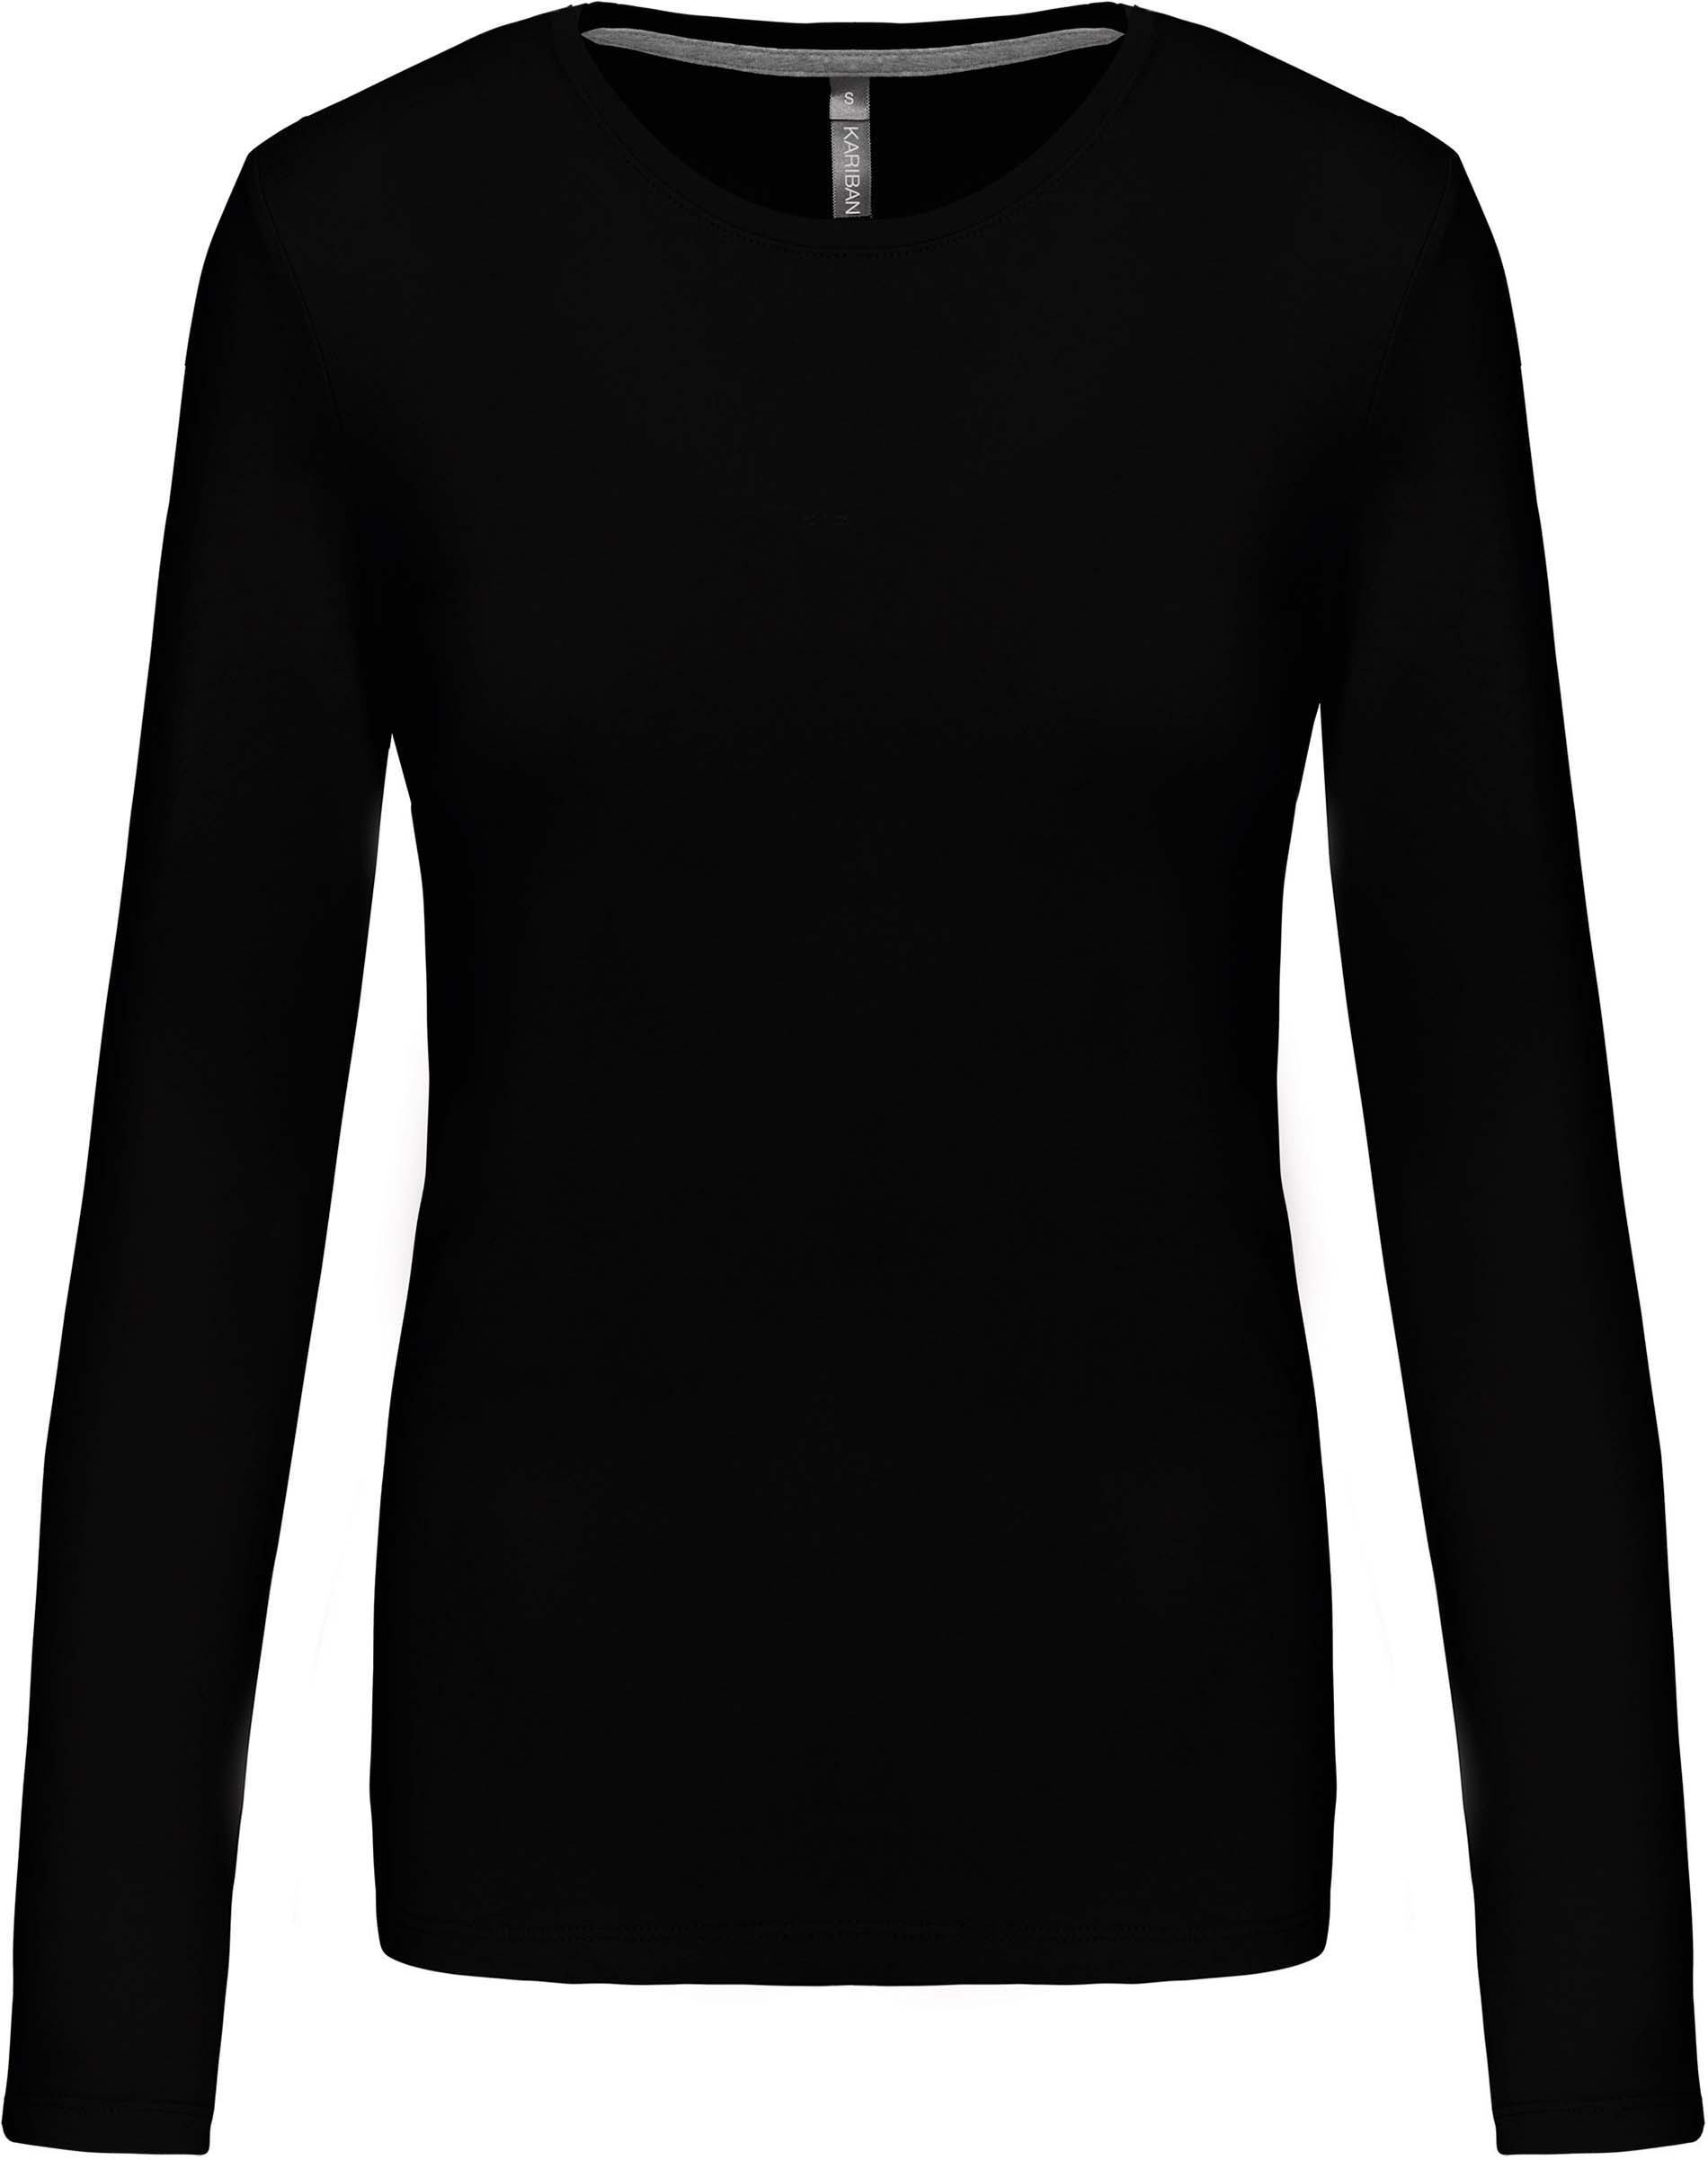 Dámské tričko dl.rukáv Velikost: XL, Barva: black, Rozměr: 65,50/51